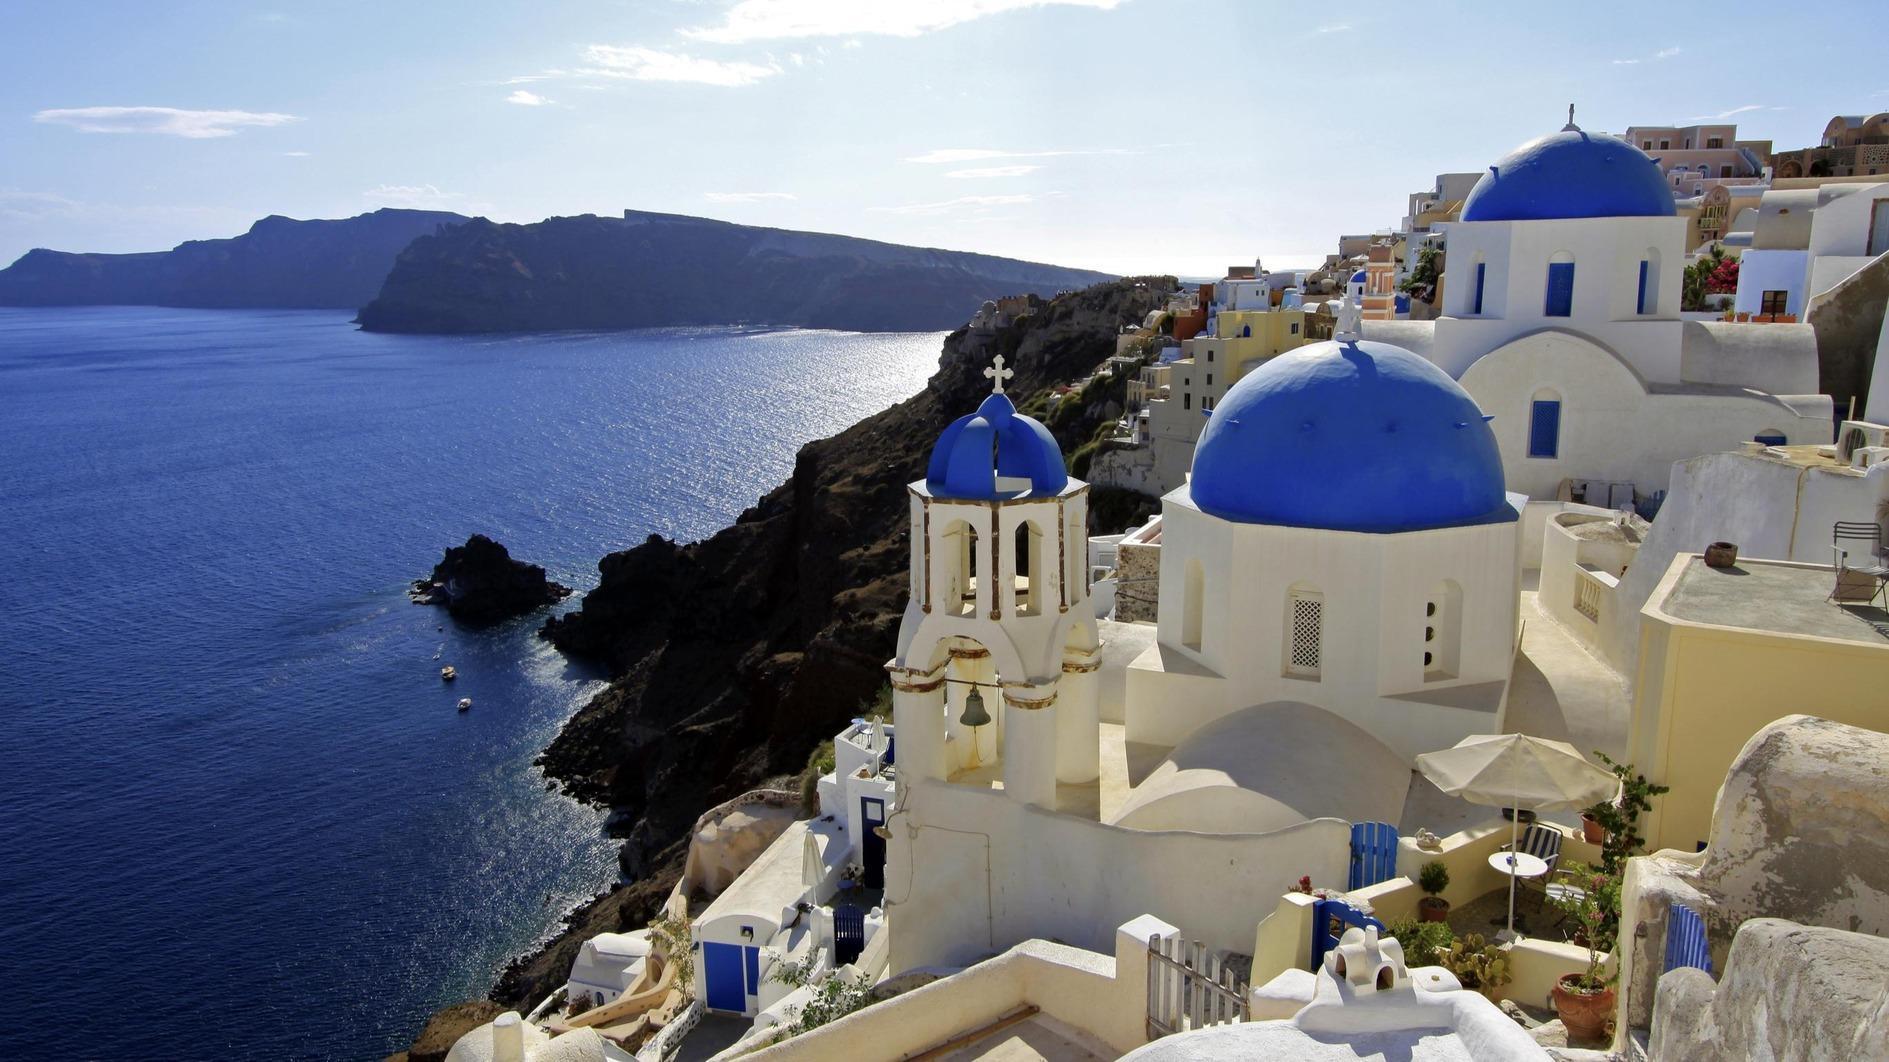 Griekse eilanden verwacht als top Eid-bestemming in het buitenland